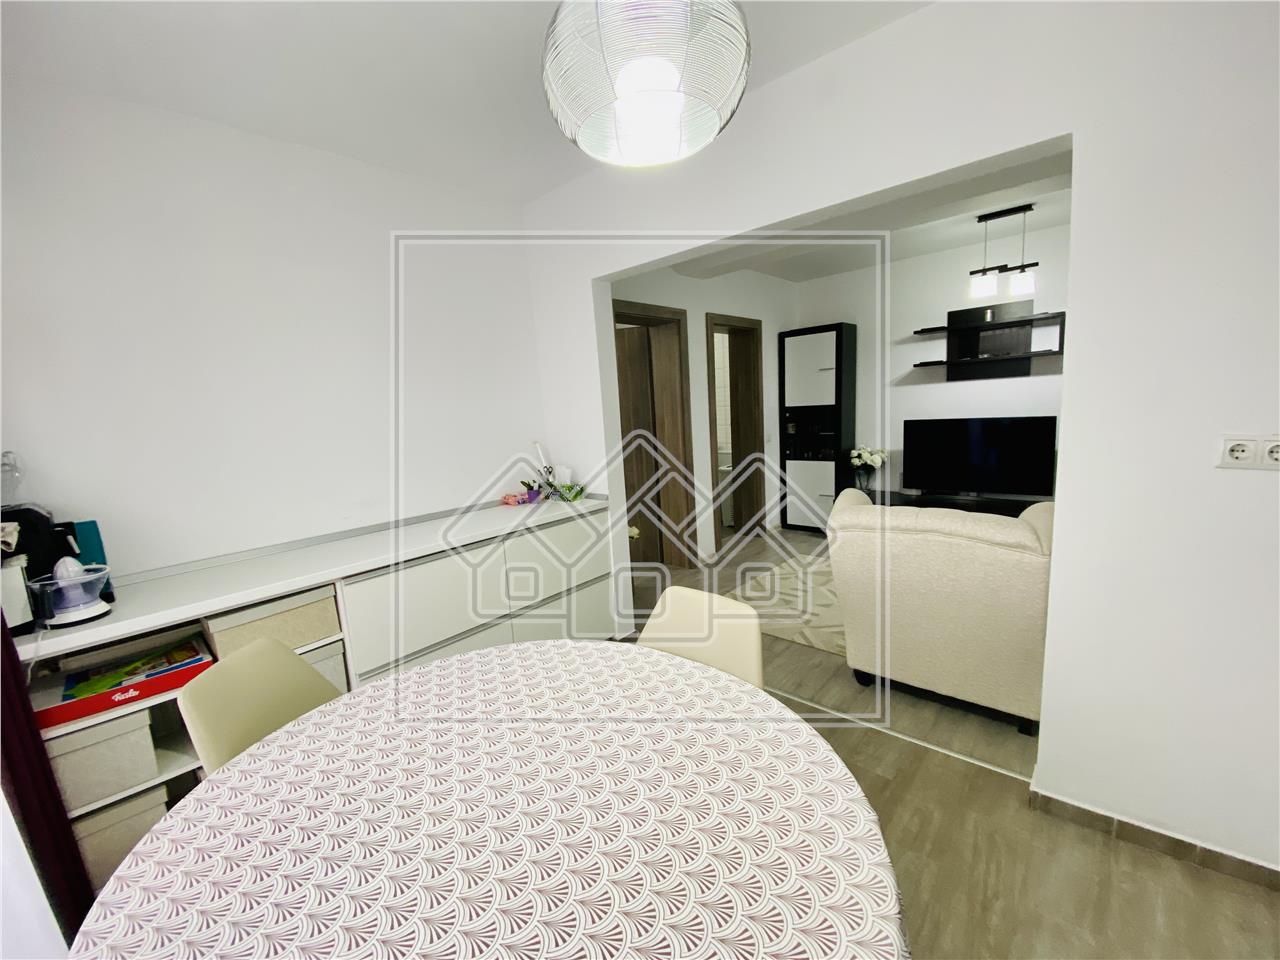 Apartament de vanzare in Sibiu -3 camere, 2 balcoane - C. Arhitectilor